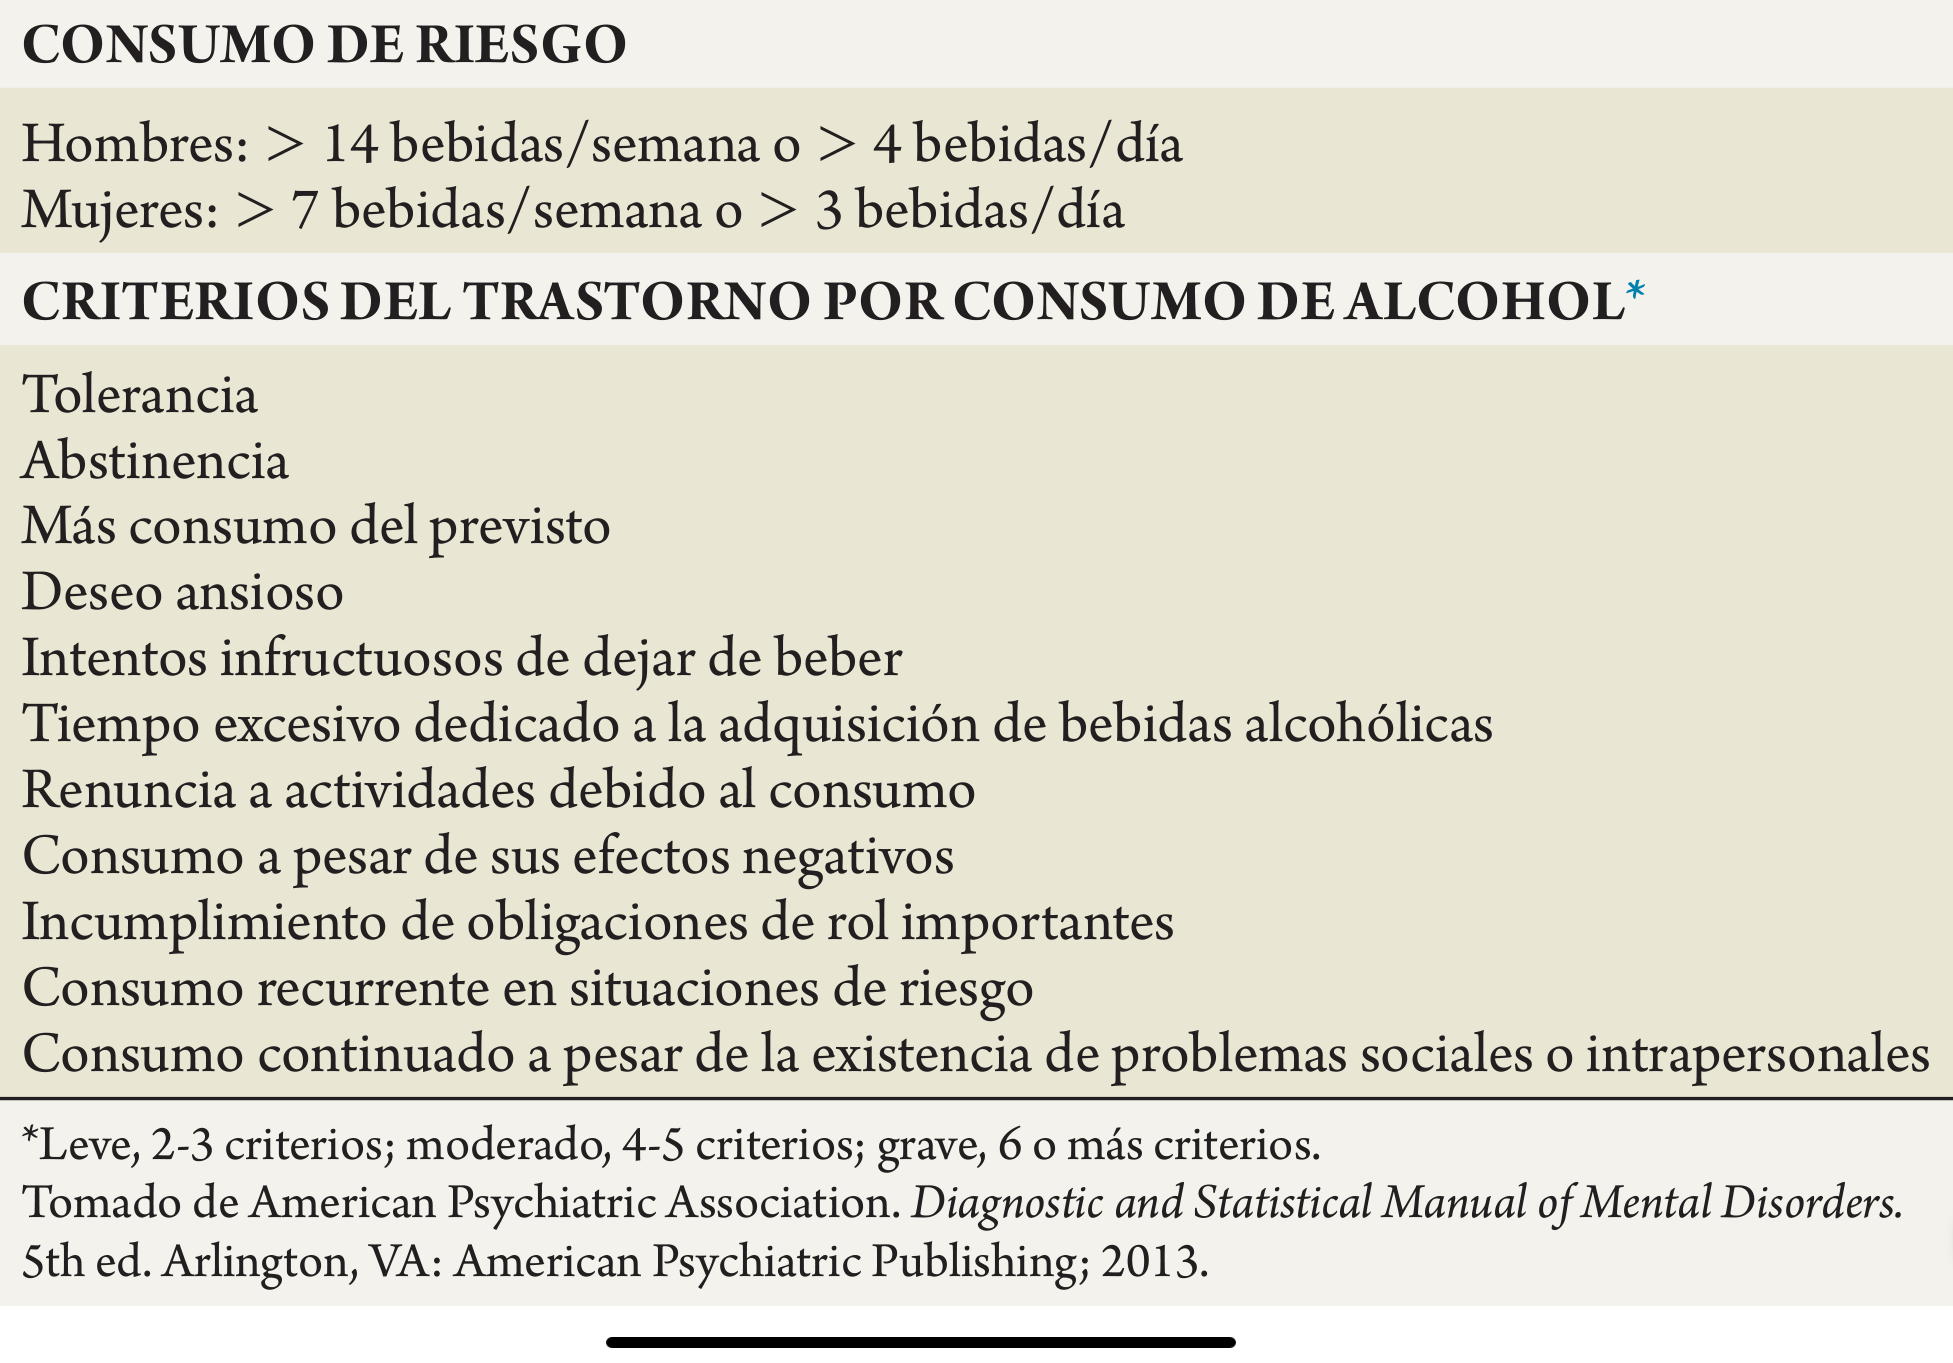 Términos y criterios sobre las pautas de consumo de alcohol